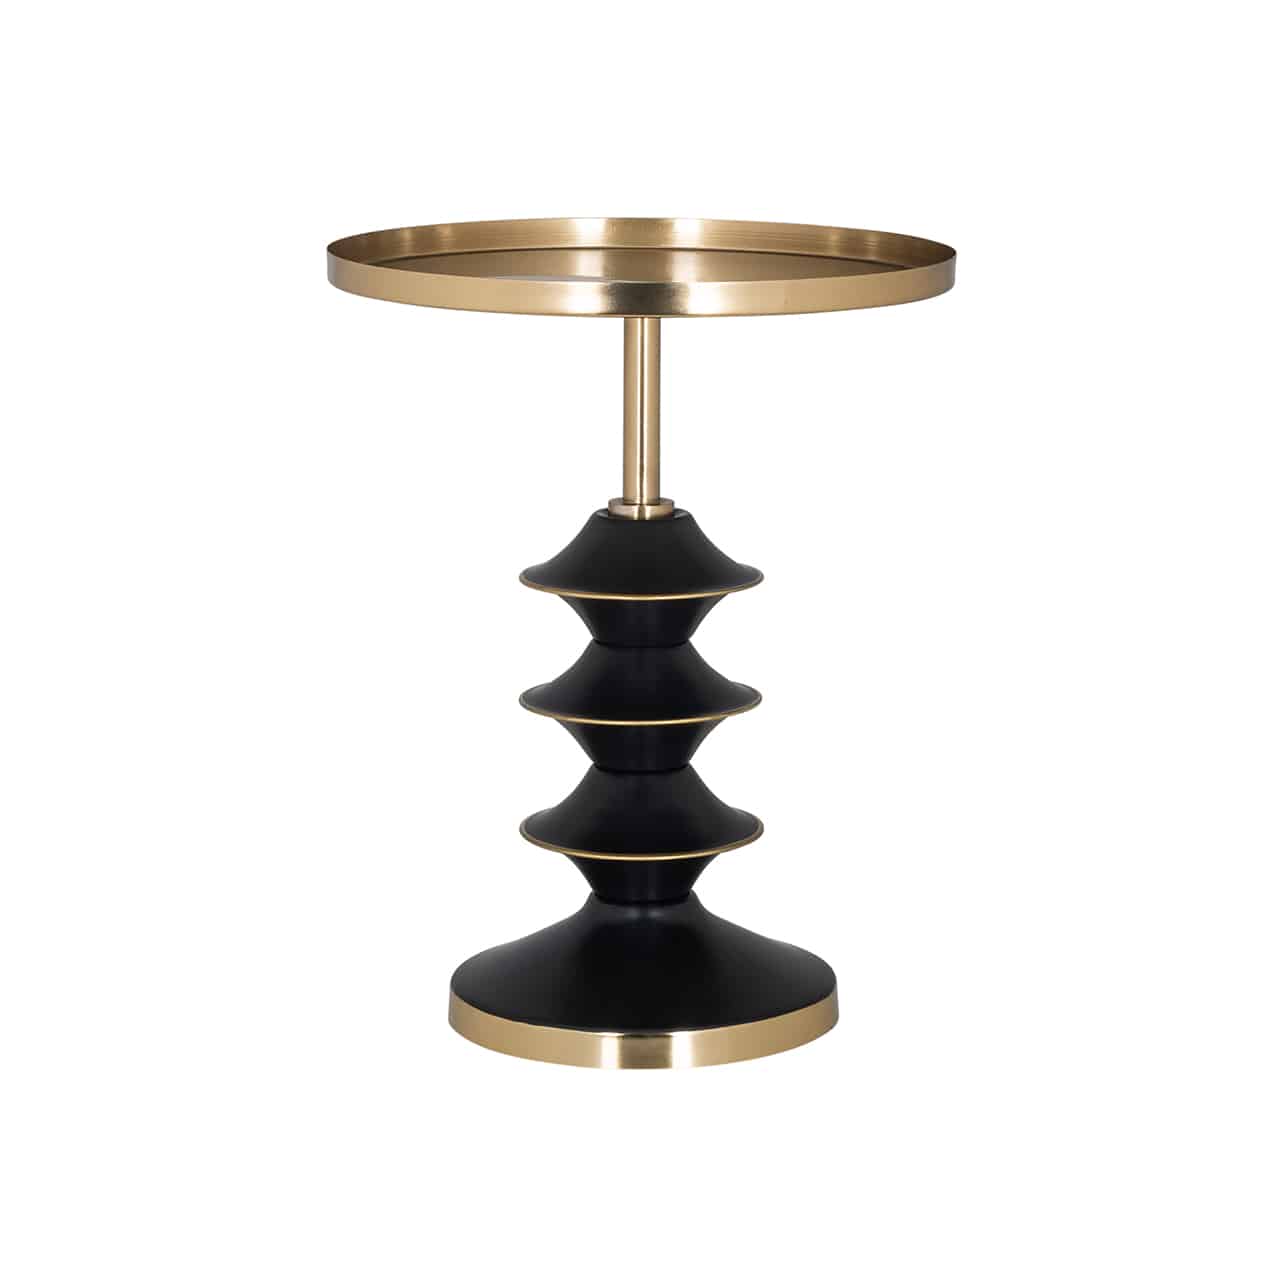 Moderner Beistelltisch mit einem schwarz-goldenen runden Standfuß, der entfernt an ein Schraubgewinde erinnert; darauf, auf einem dünnen goldenen Sockel  eine   einem Tablett ähnliche runde Tischplatte.